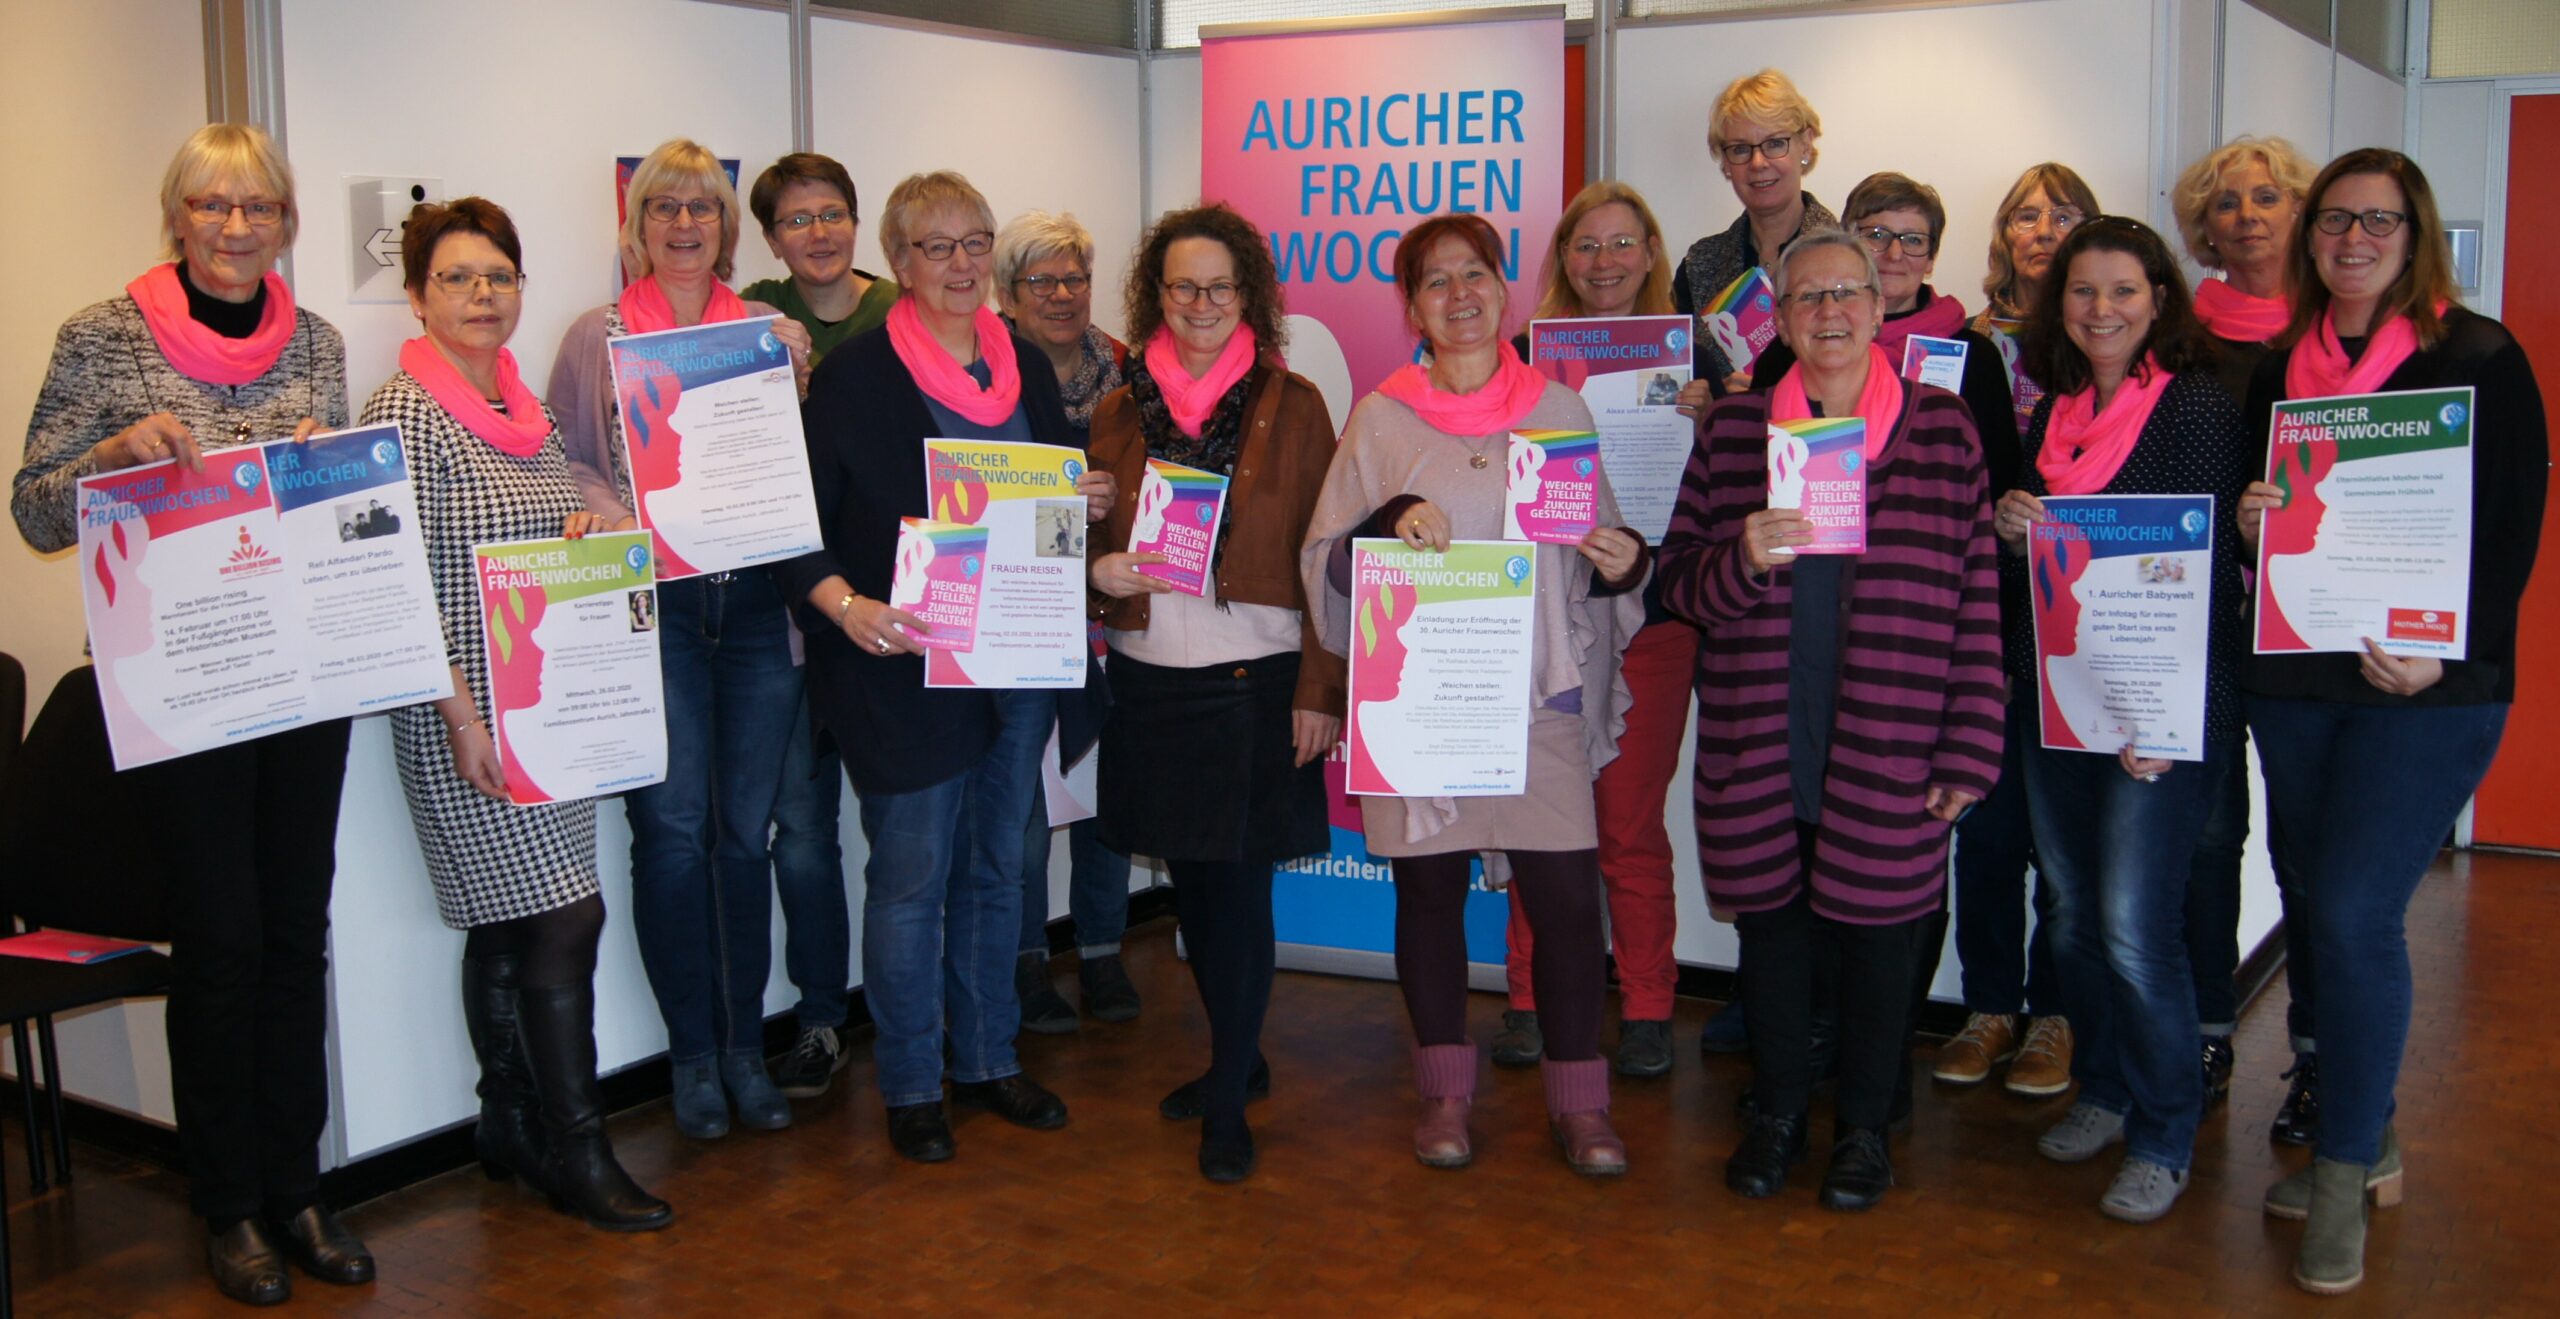 Auricher Frauenwochen 2020 - Eröffnung im Rathaus